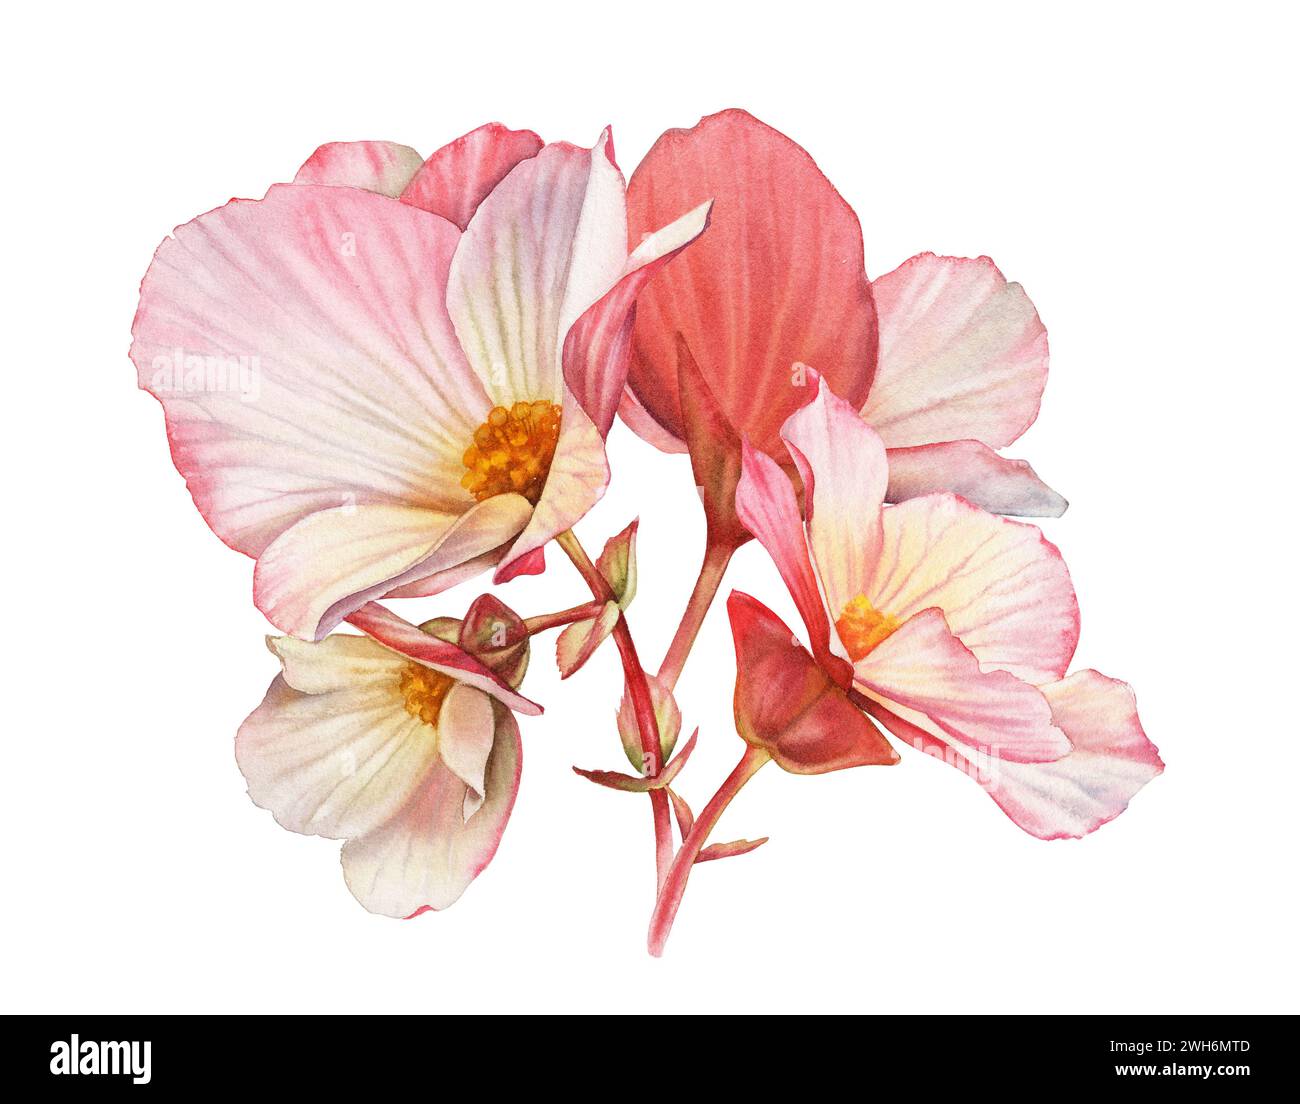 Fiori di begonia acquerello. Bouquet con grandi petali e boccioli. Colorata pianta tenera in rosa e arancione isolata su bianco. Floreale botanico realistico Foto Stock